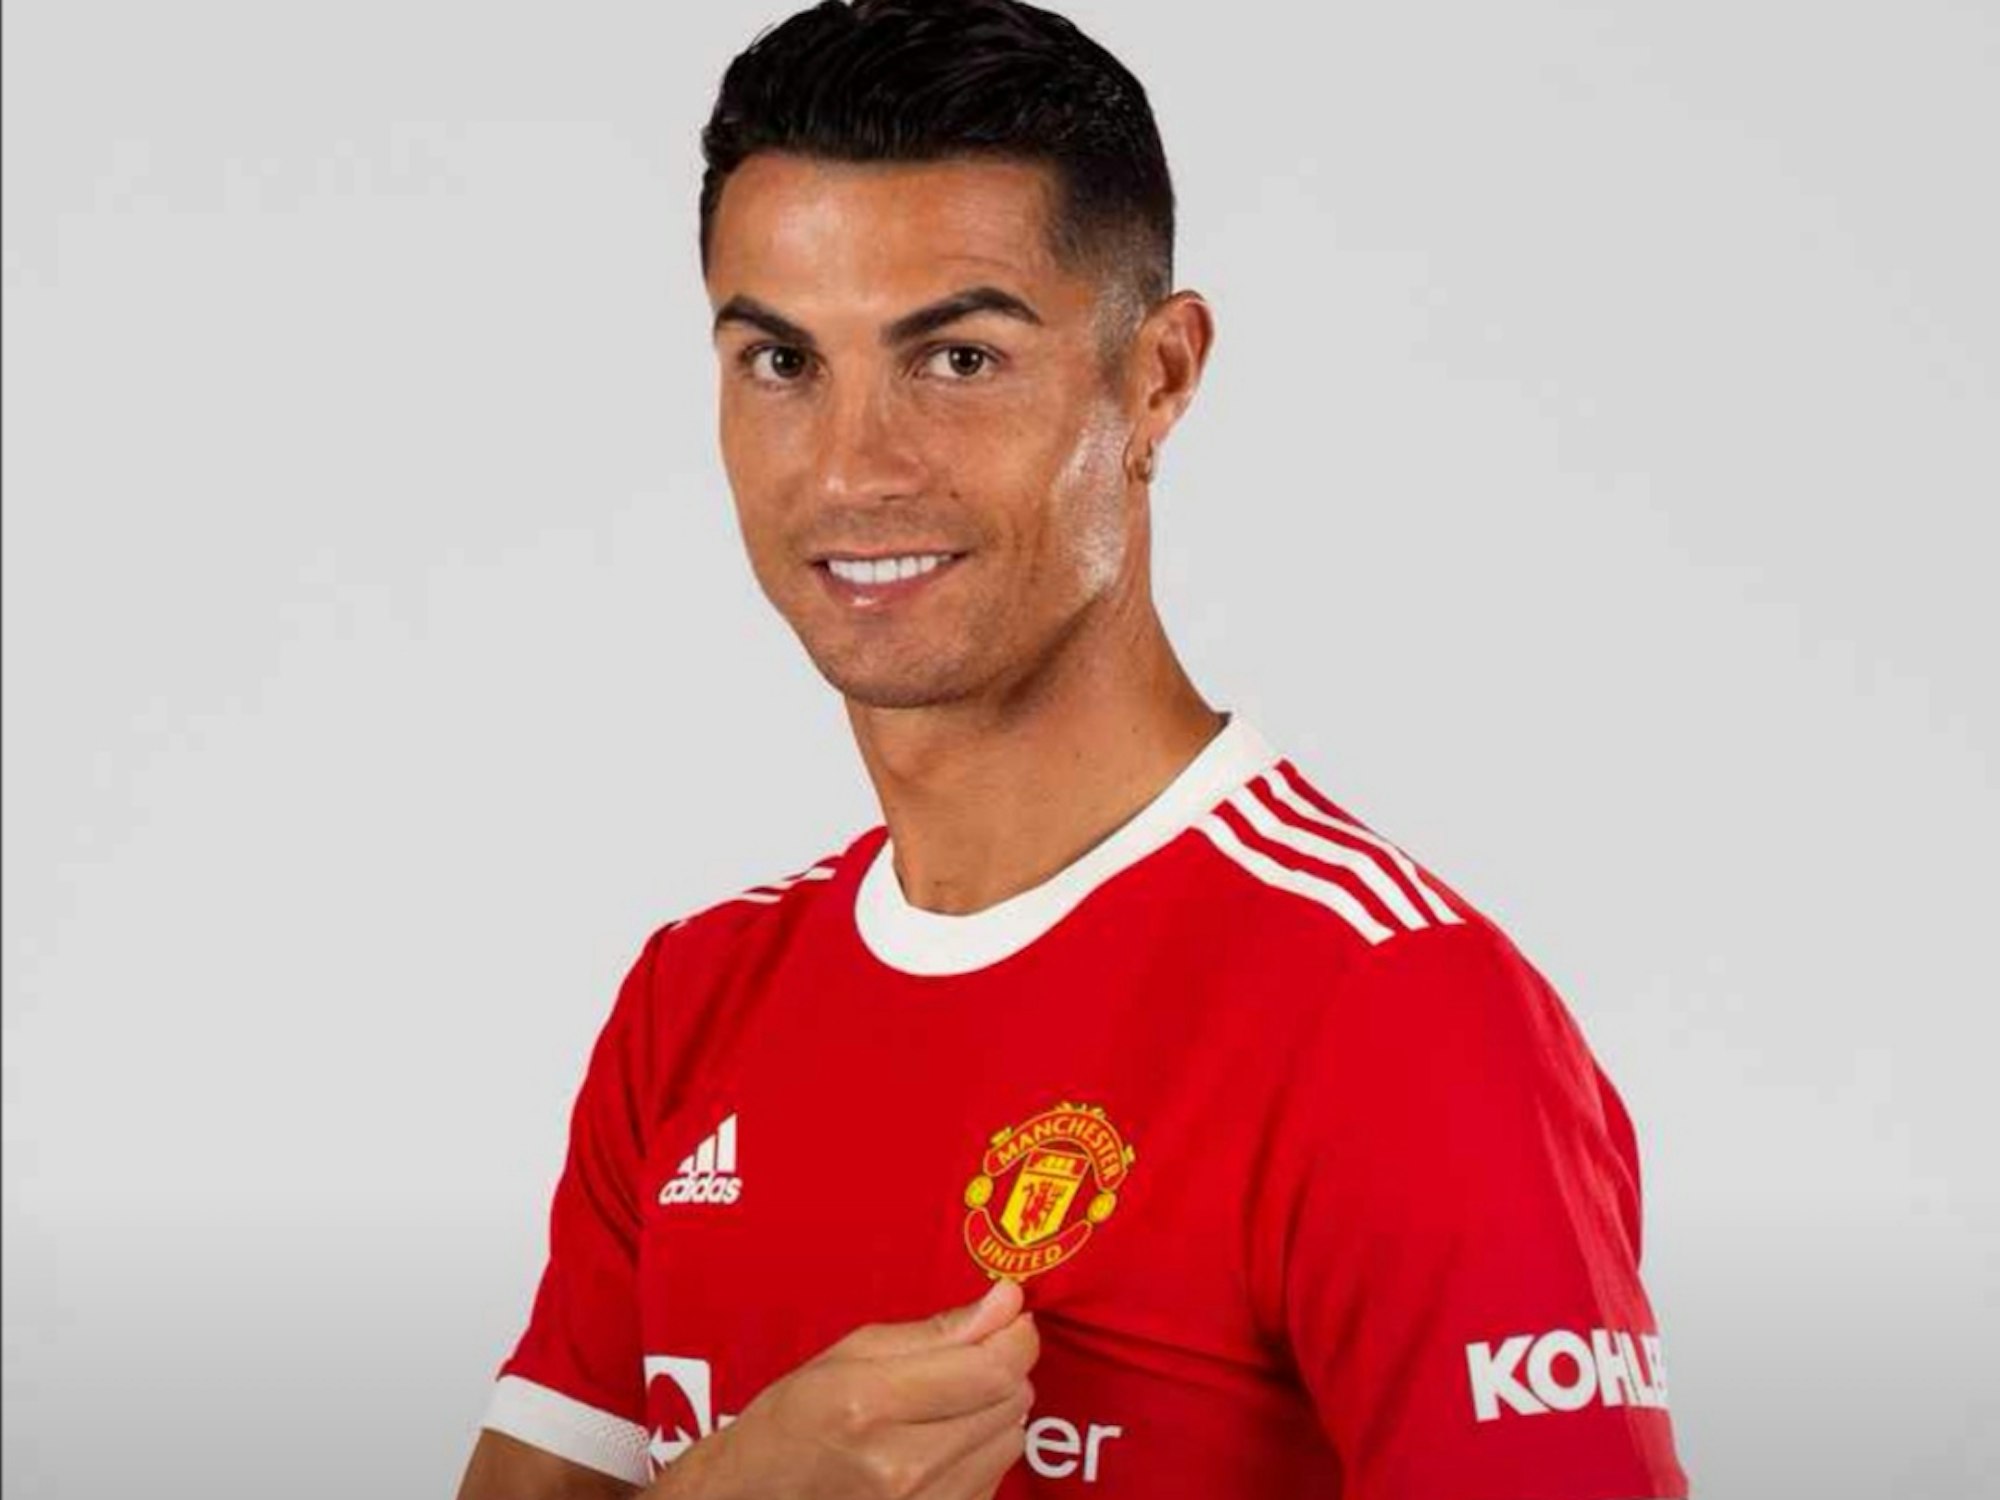 31. August 2021: Manchester United präsentiert die ersten Bilder von Cristiano Ronaldo in seinem neuen Trikot. Bilder zur Verwendung frei.